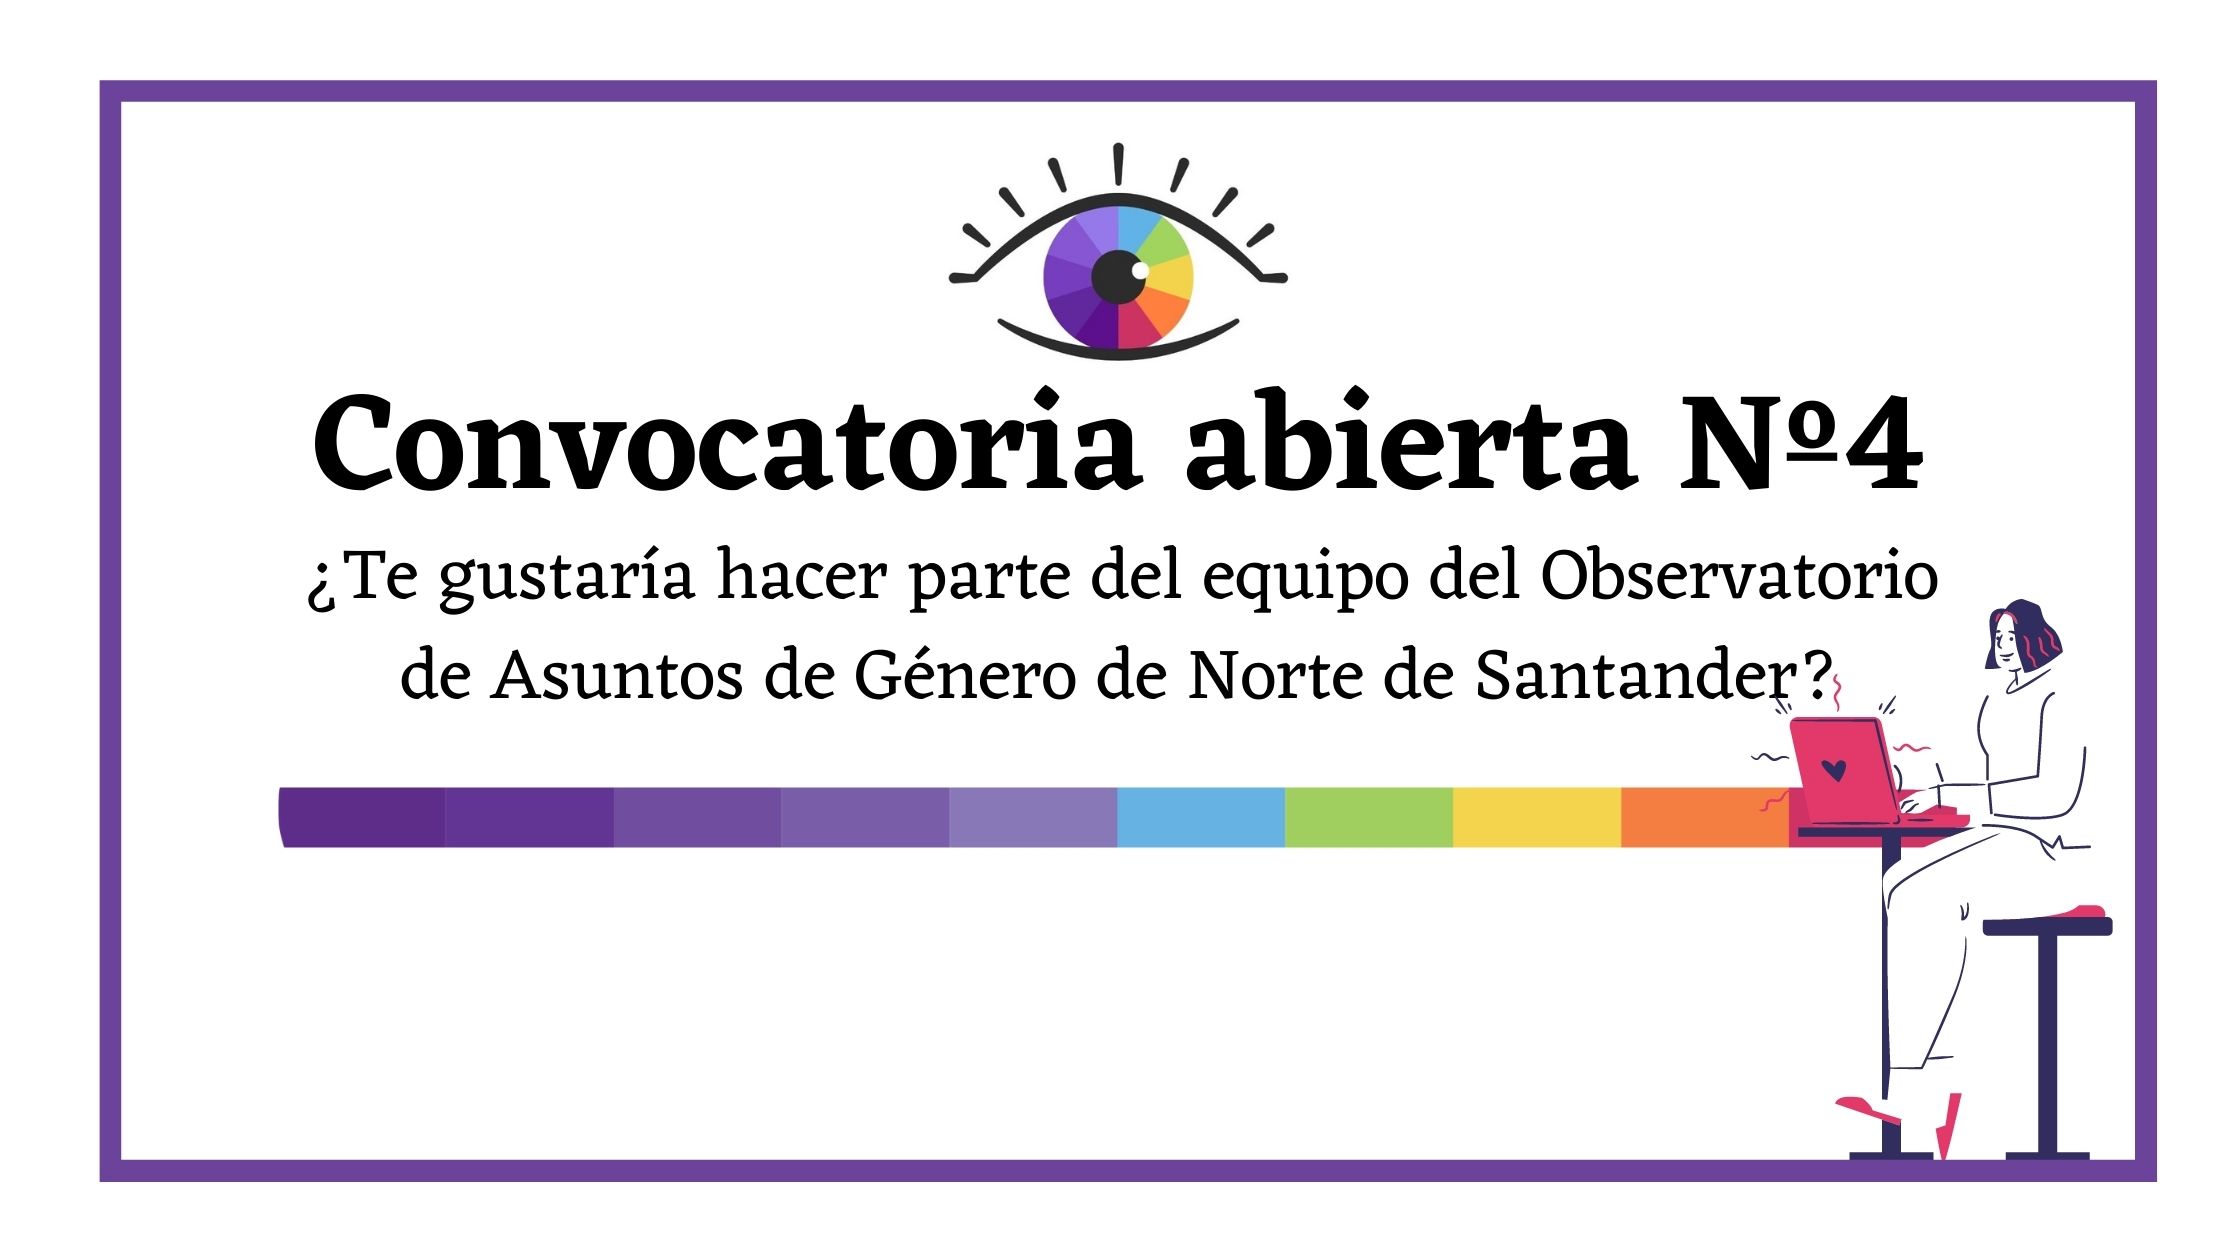 ¿Te gustaría hacer parte del equipo del Observatorio de Asuntos de Género de Norte de Santander (1)